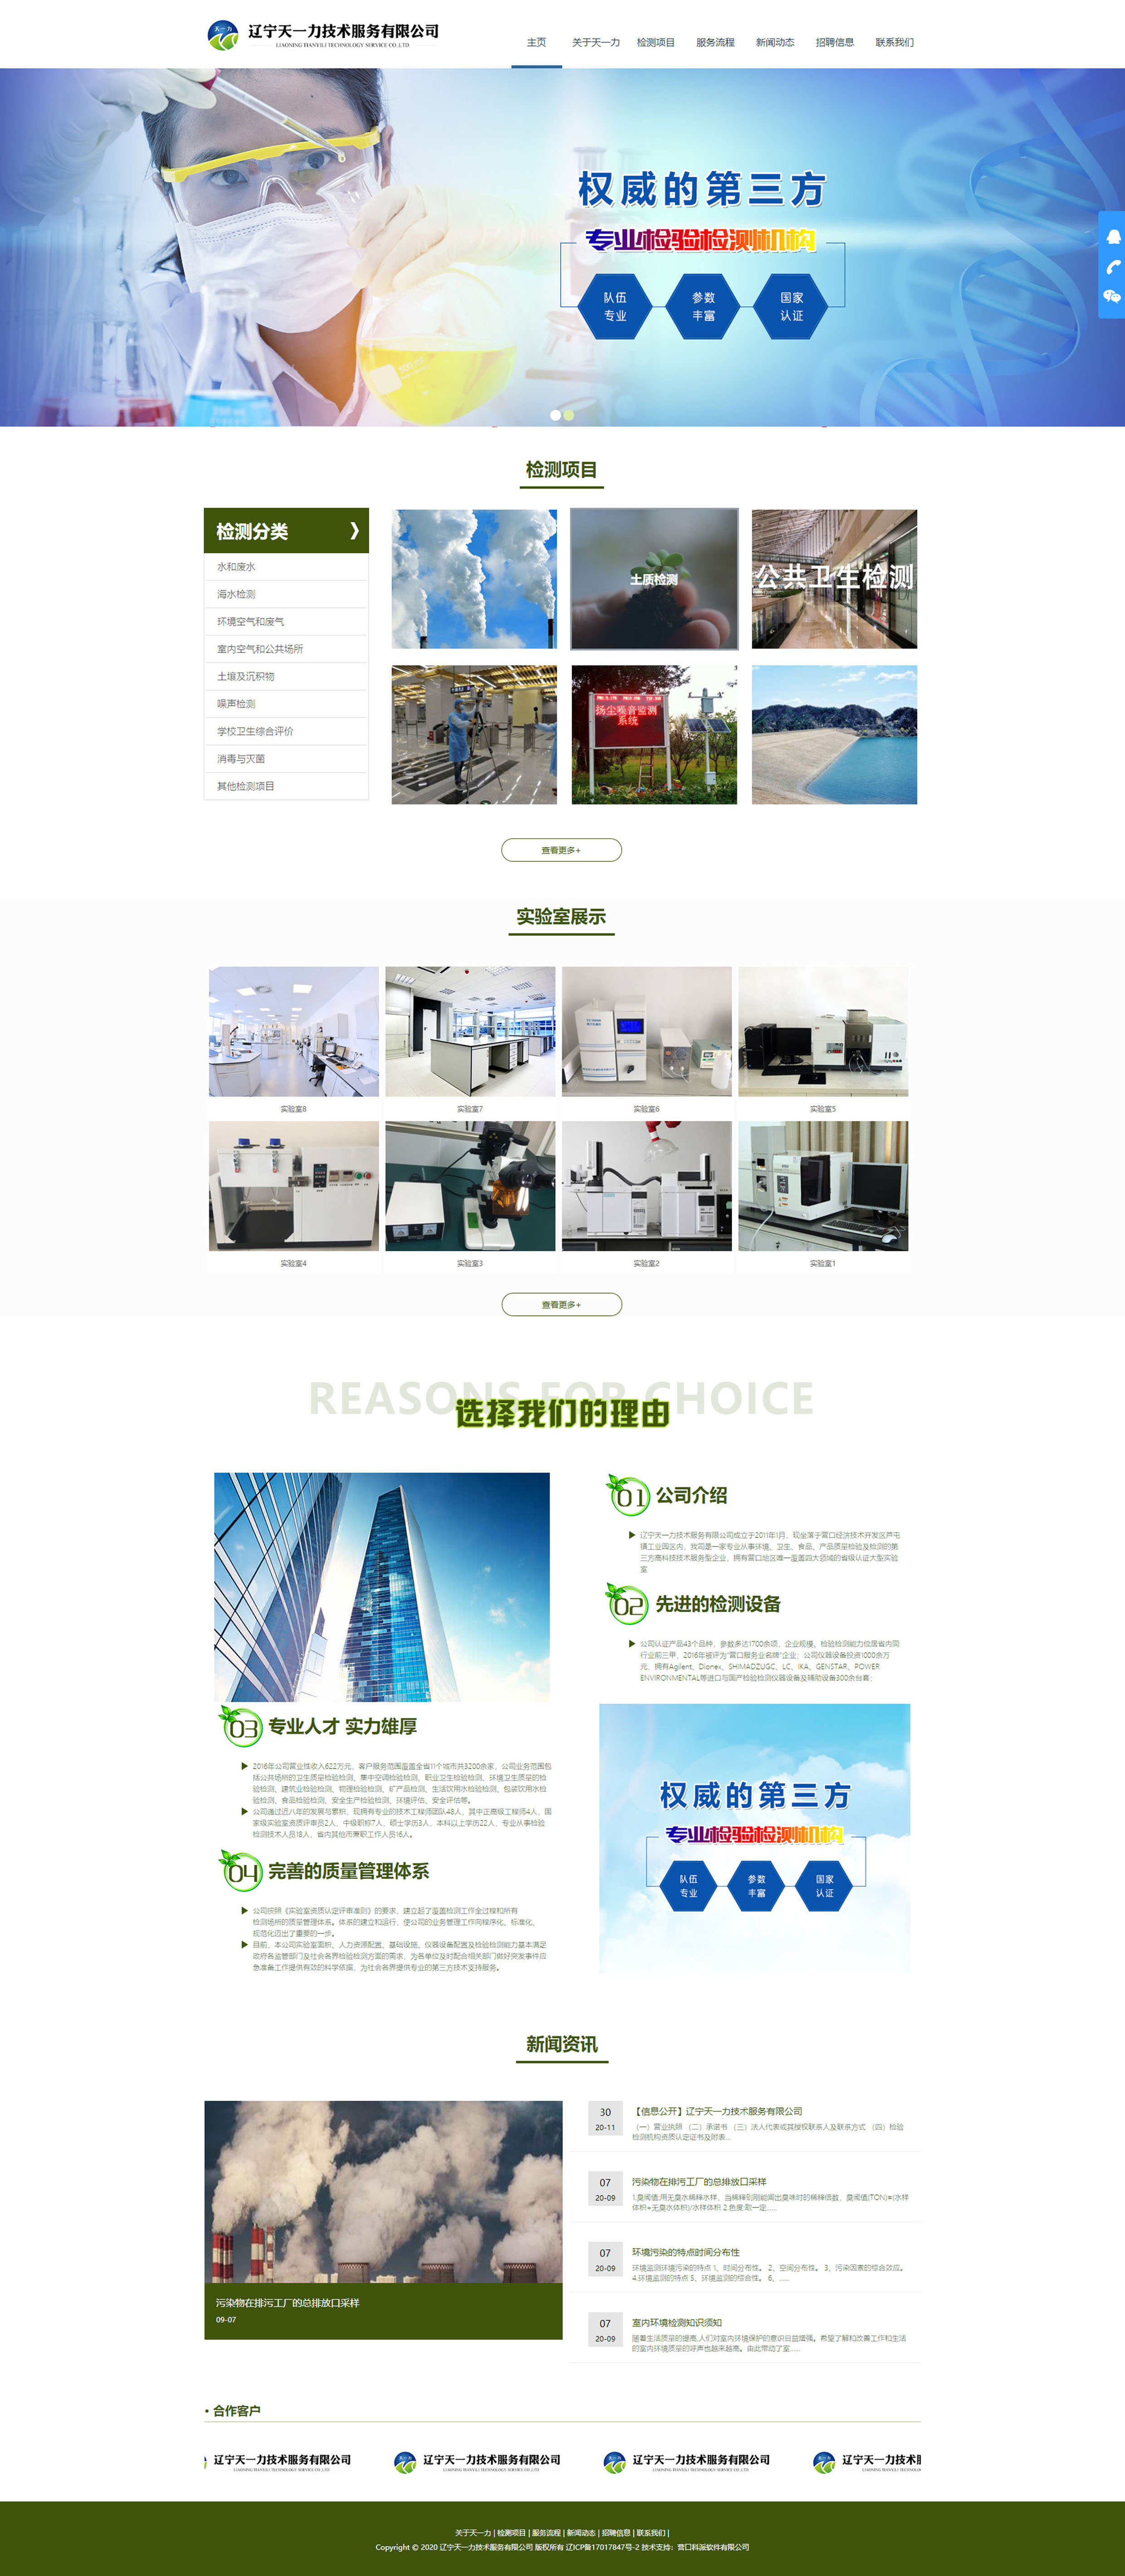 企业公司污水处理网站设计制作建设.jpg